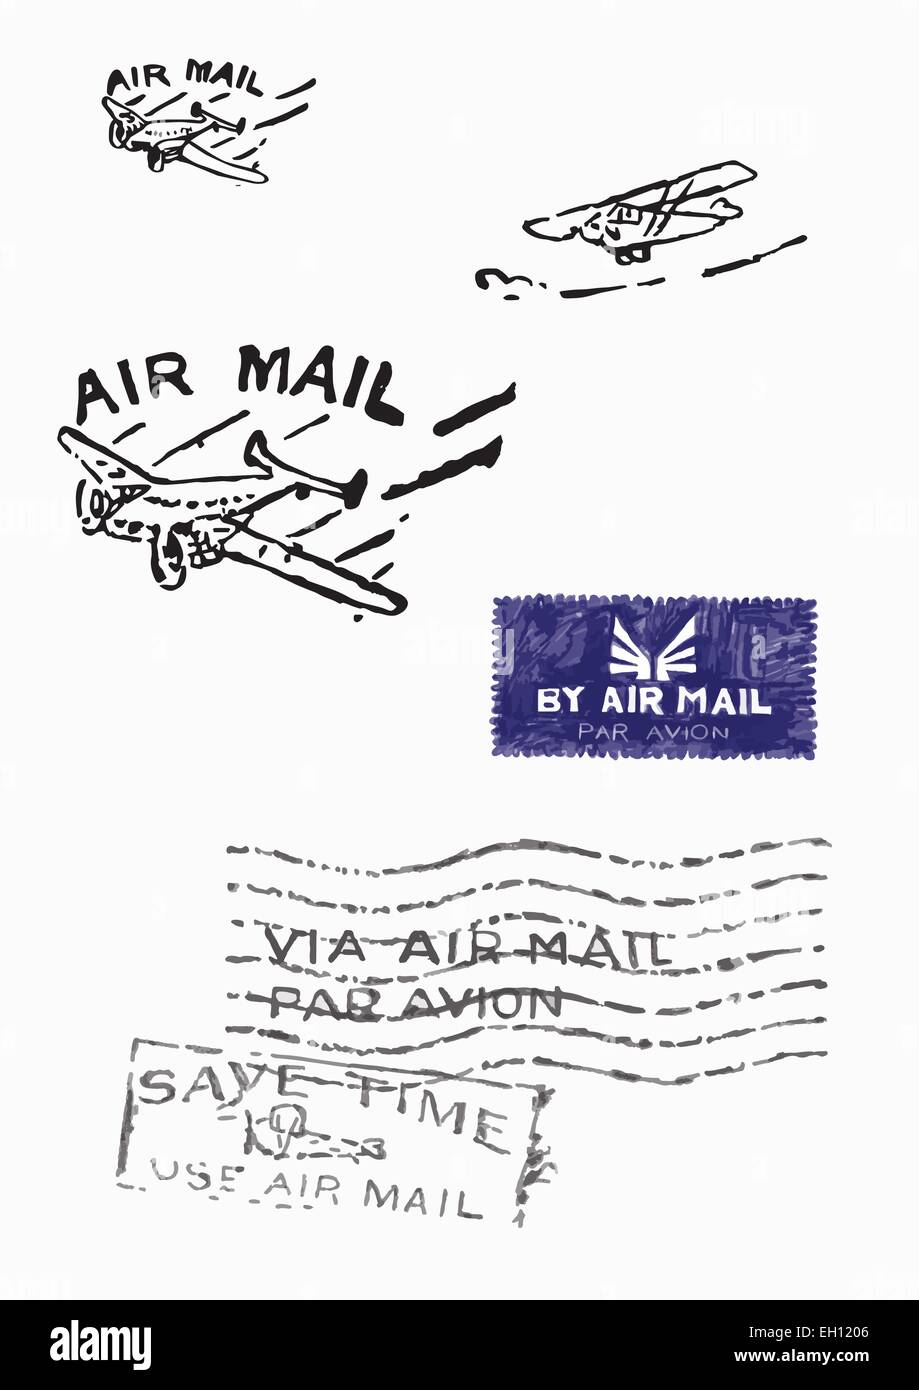 Più timbri della vecchia posta aerea (Orignal - no scansioni - disegnata a mano). Disegnata a mano illustrazioni vettoriali. Illustrazione Vettoriale